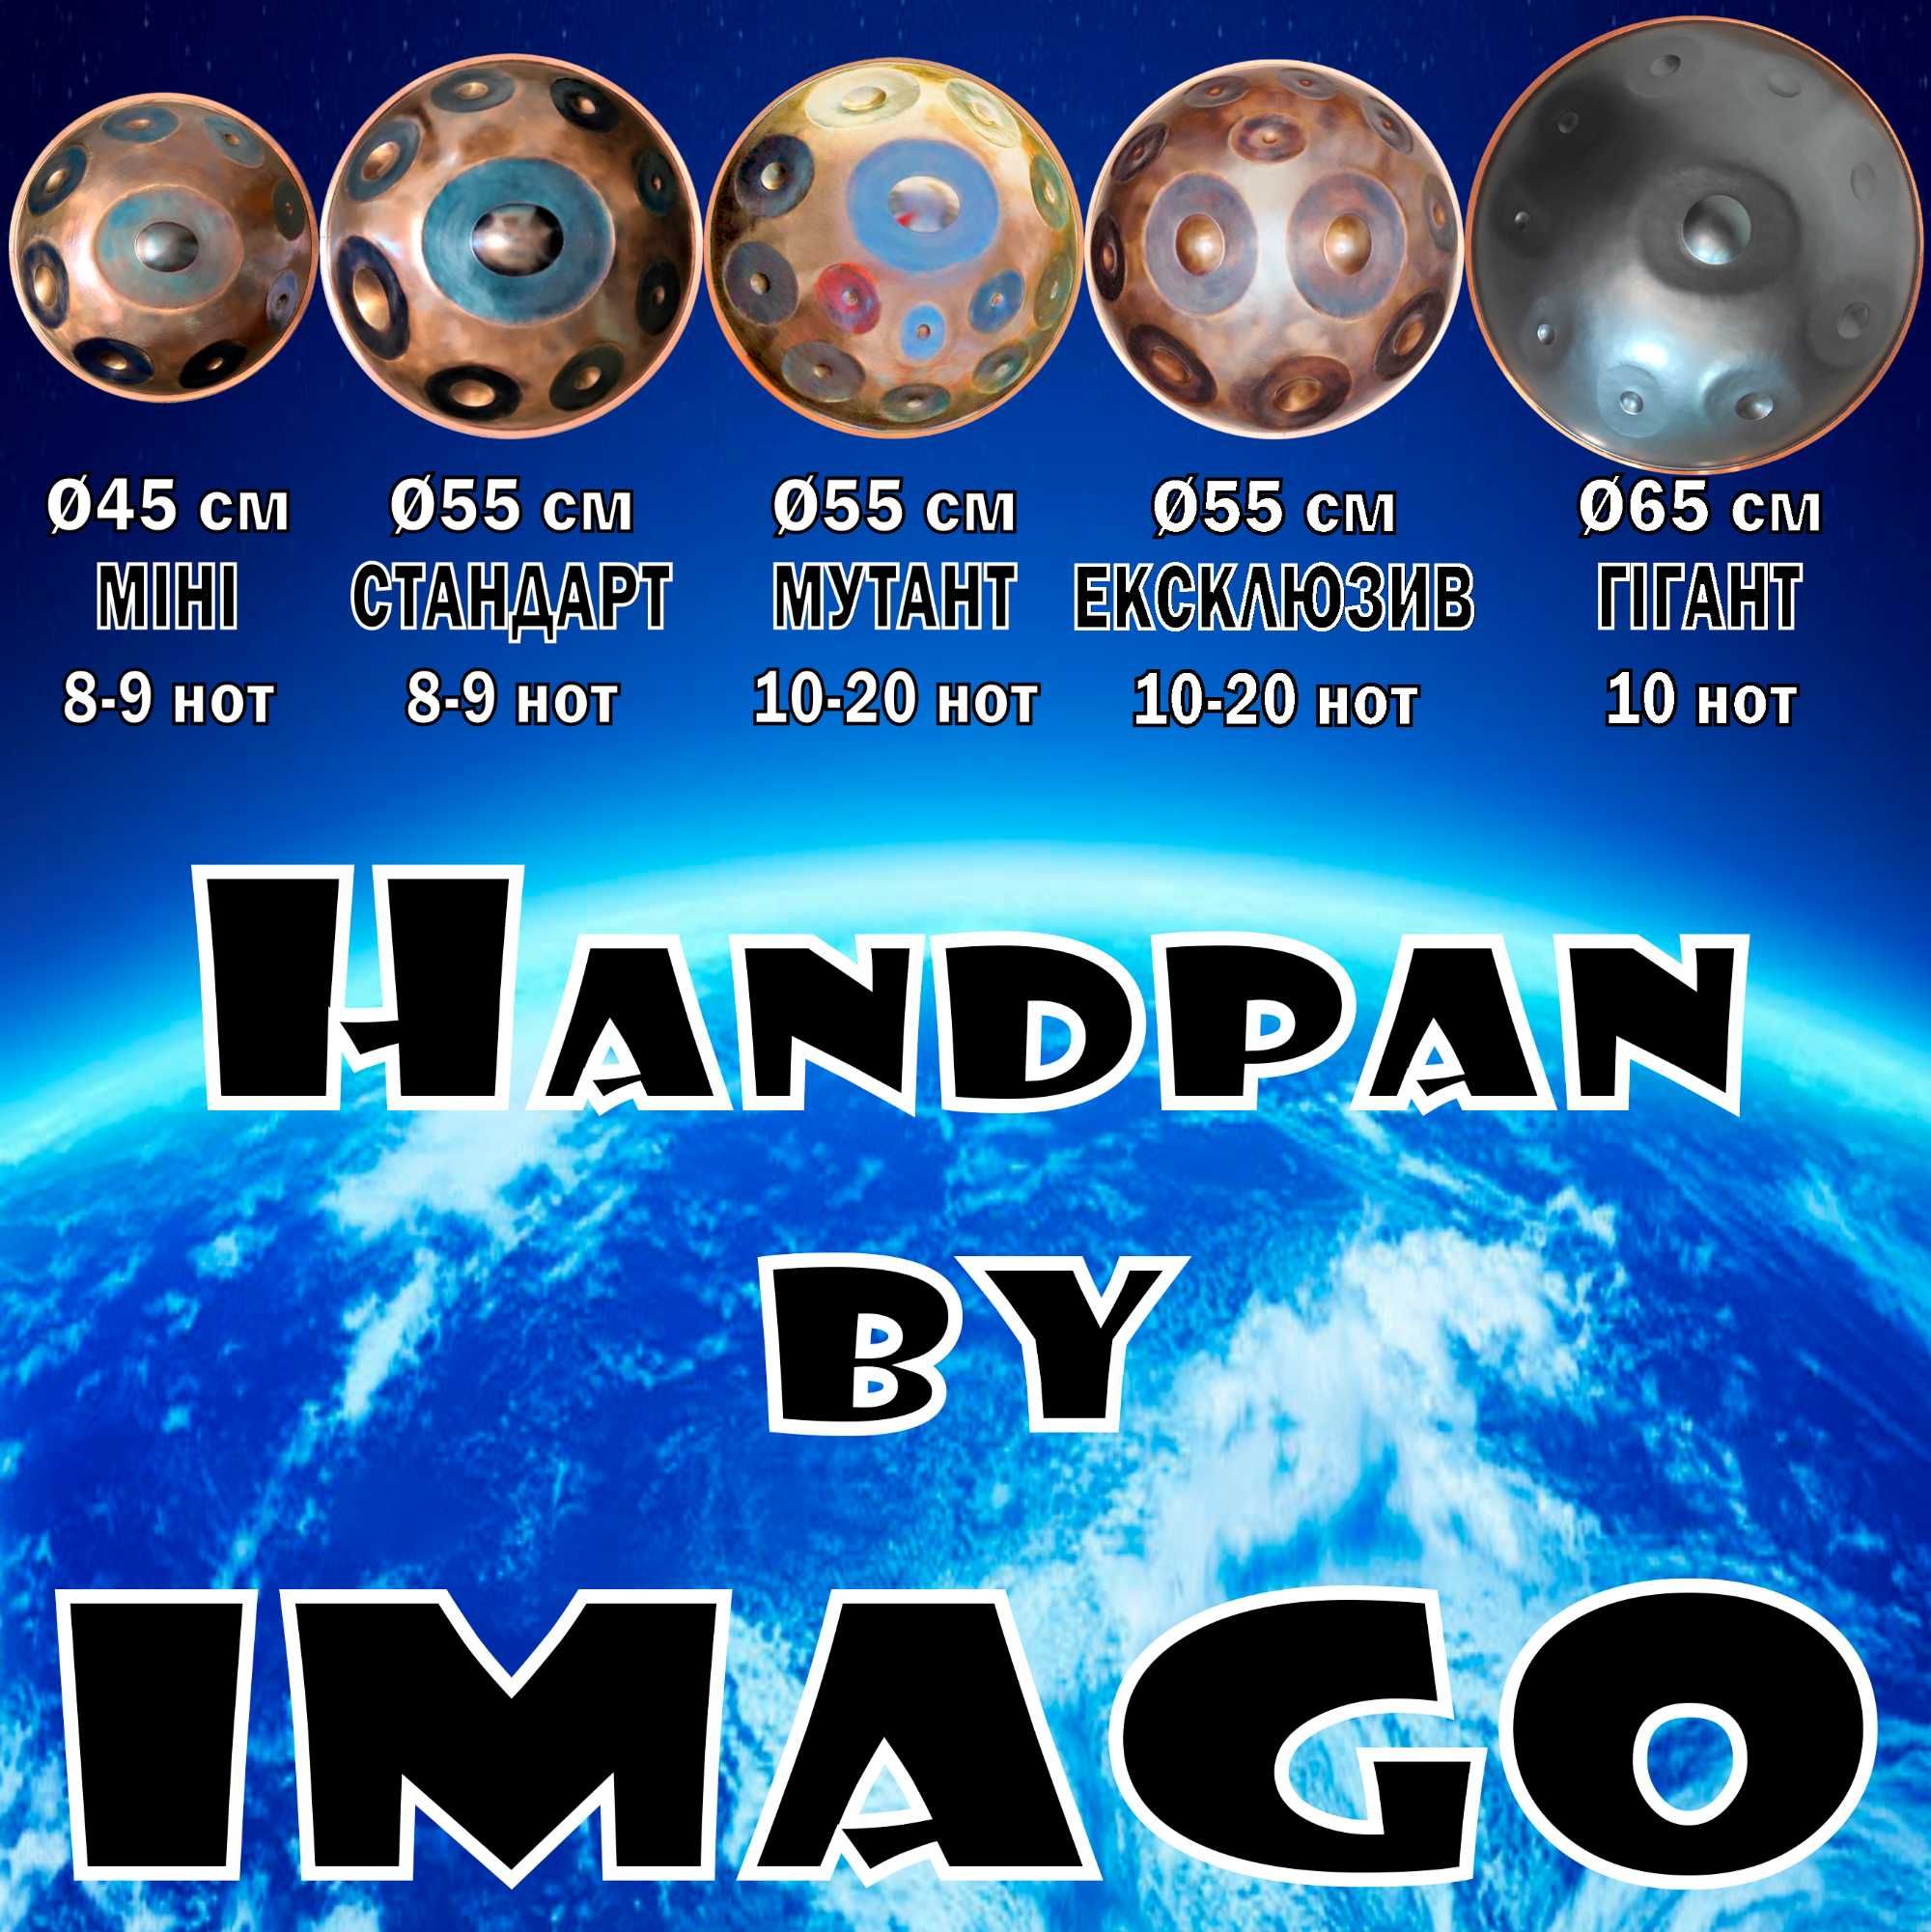 Ханг Хендпан 10 нот ГІГАНТ Ø65см (чохол у подарунок) Hang Handpan